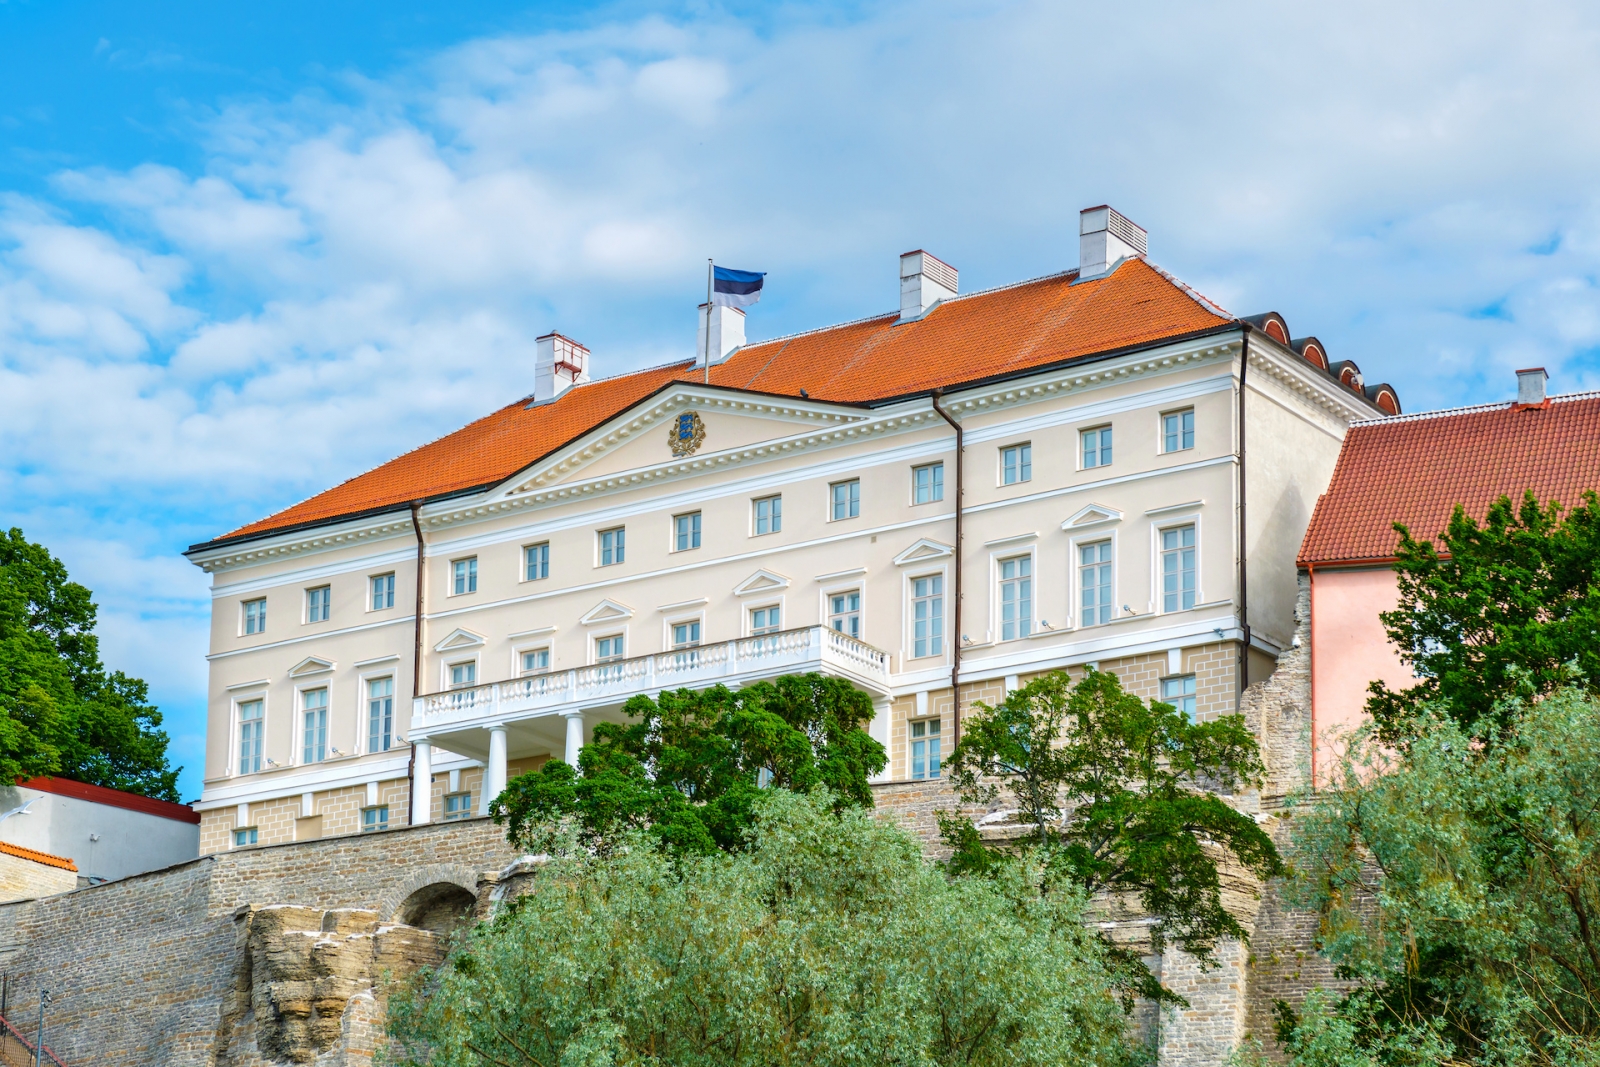 Bâtiment du gouvernement estonien.  Tallinn, Estonie